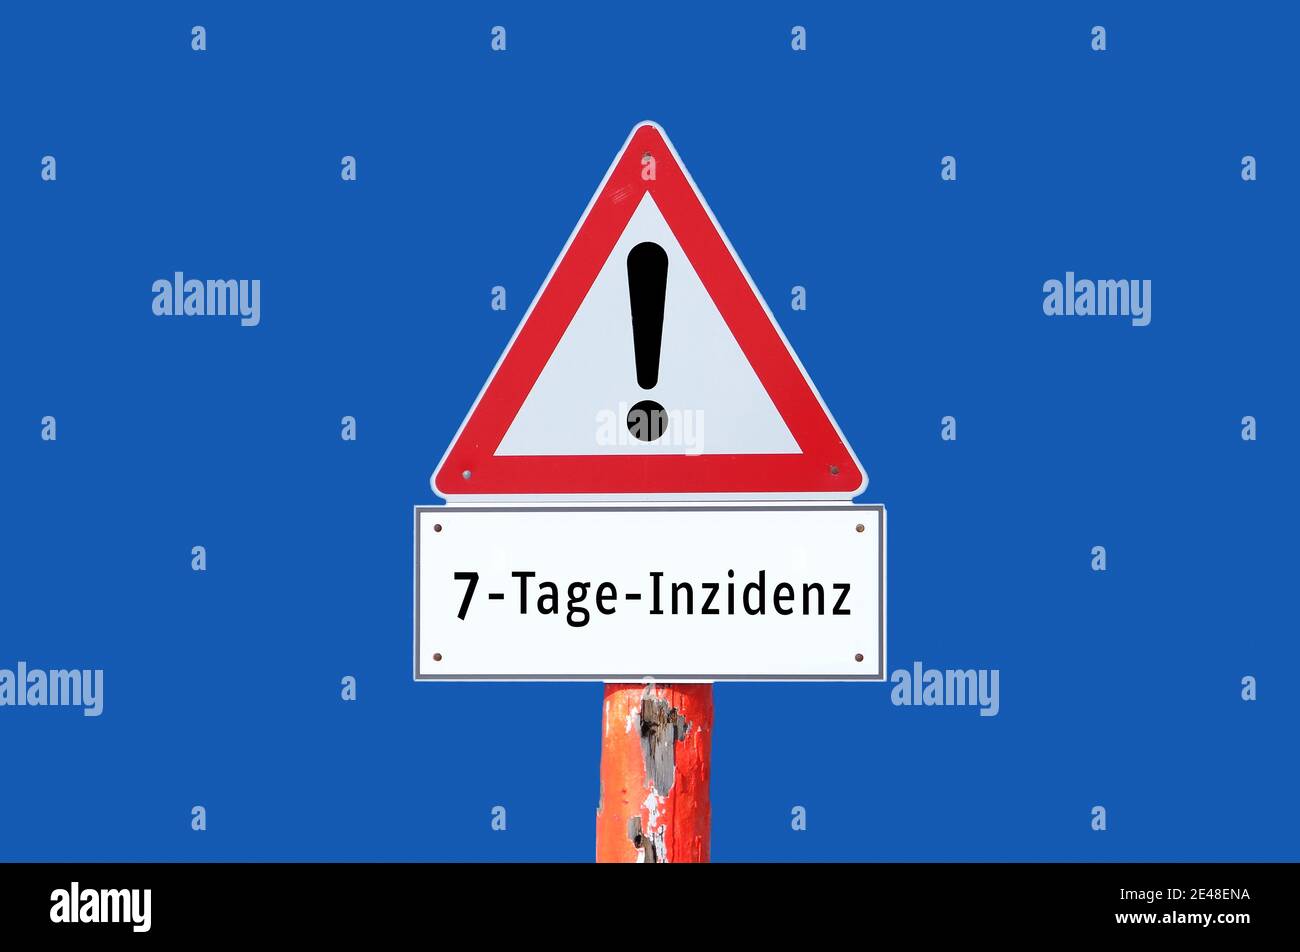 Señal de advertencia "incidencia de 7 días" sobre fondo azul en alemán Foto de stock